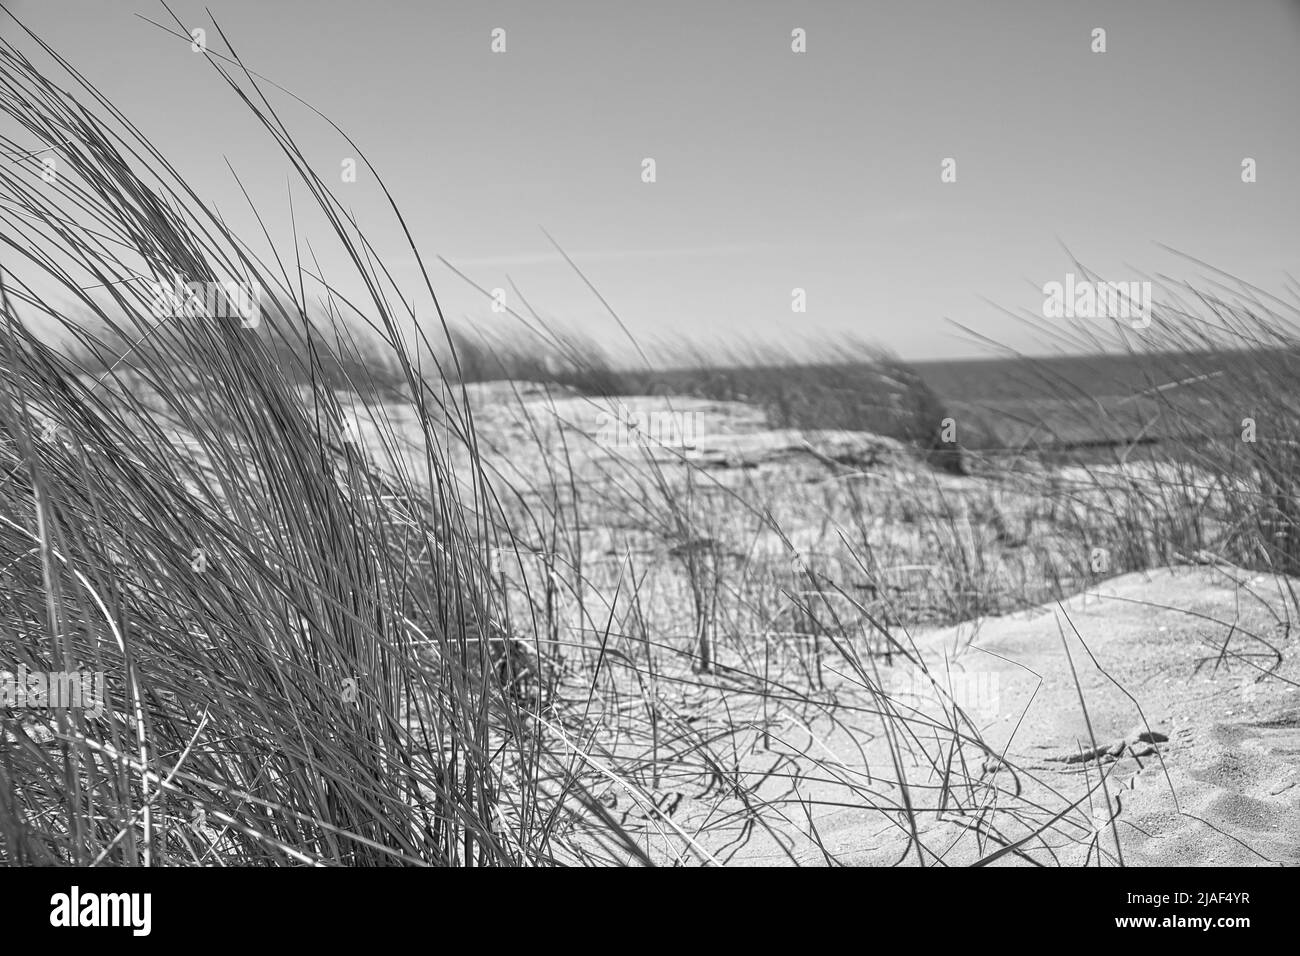 dune haute sur le darss. Point de vue dans le parc national. Plage, mer Baltique, ciel et mer. Photo de la nature en Allemagne Banque D'Images